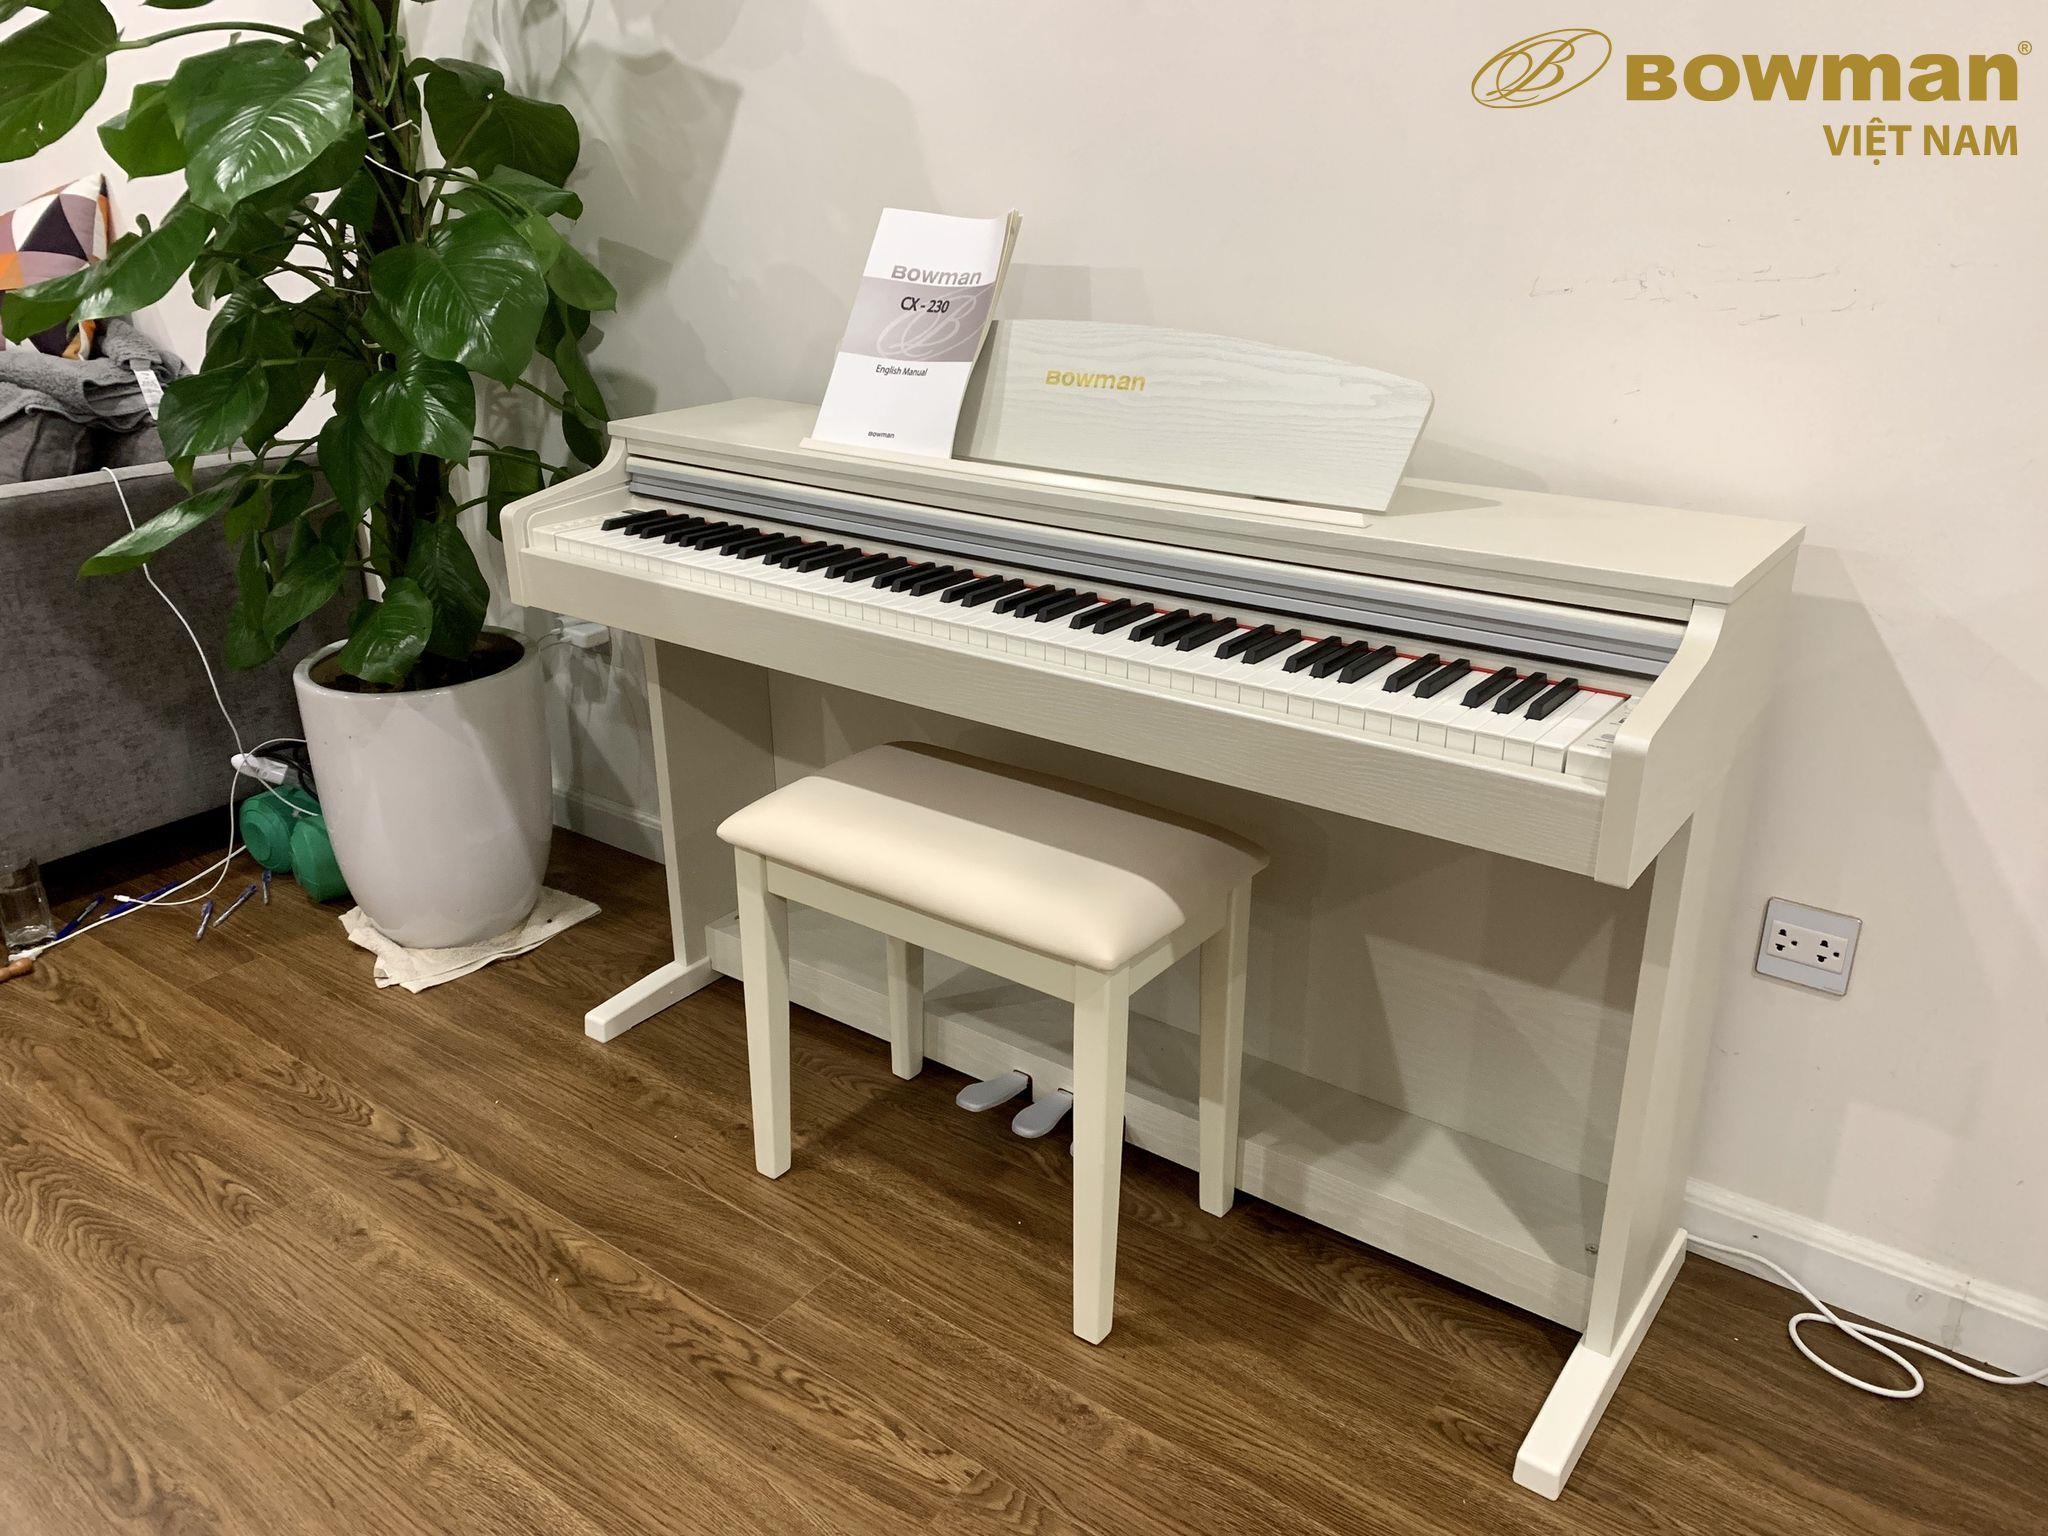 Hình ảnh chi tiết sản phẩm đàn piano BOWMAN CX230 WH (Model 2022) - BowmanPIANO.com.vn